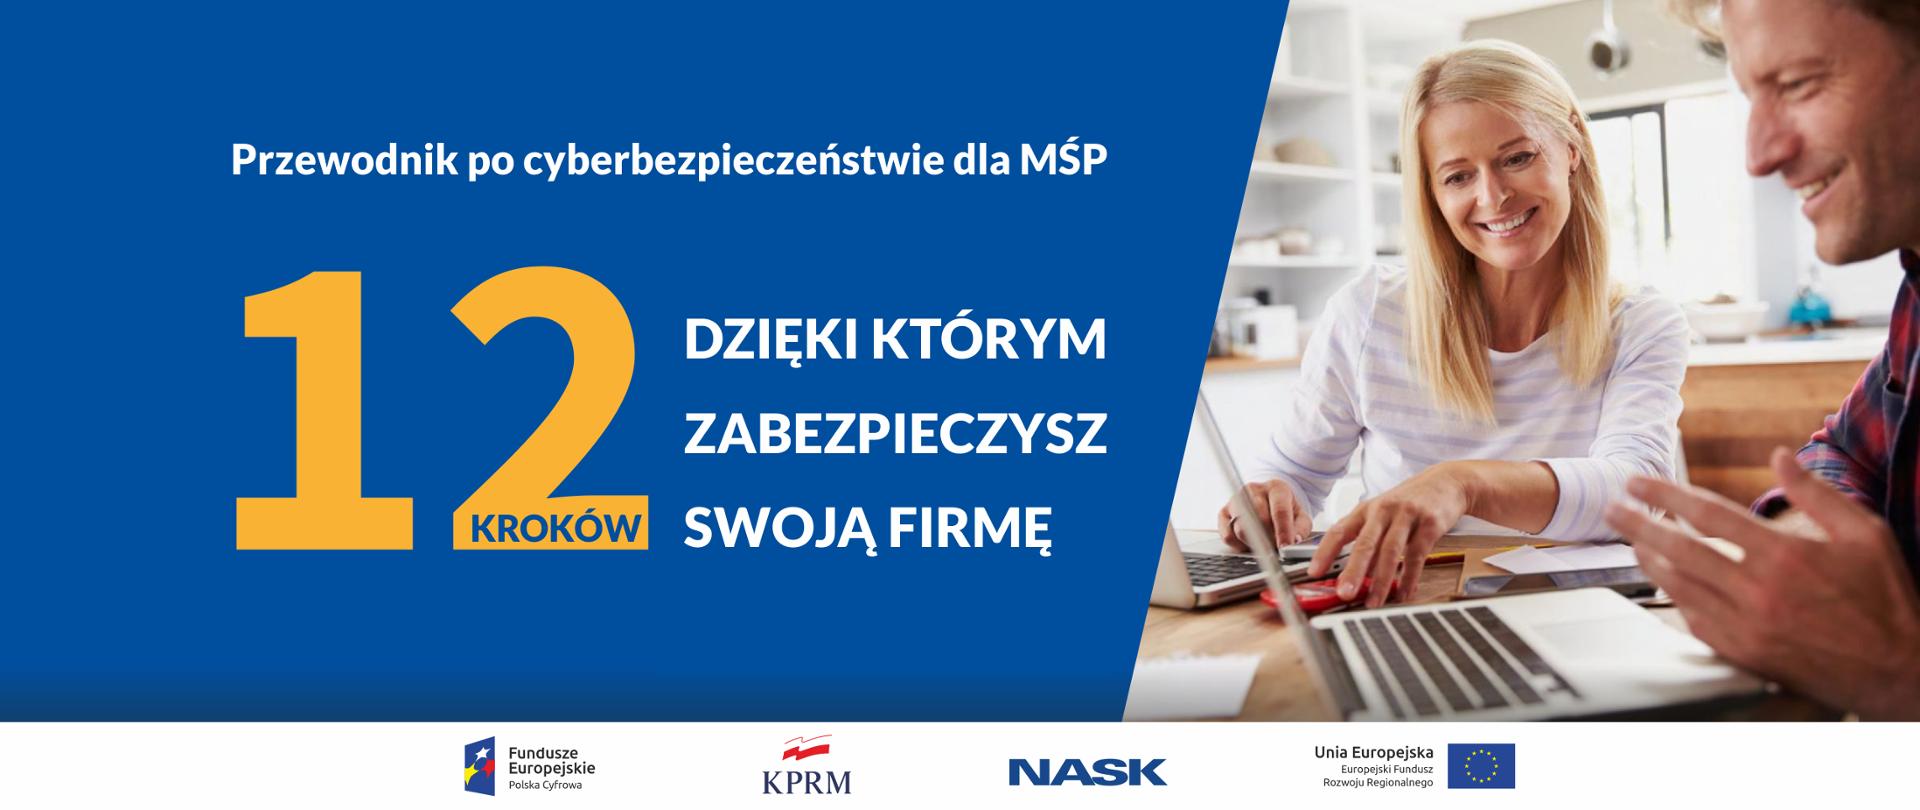 Po lewej stronie na niebieskim tle tekst: Przewodnik po cyberbezpieczeństwie dla MŚP. Niżej: 12 kroków dzięki którym zabezpieczysz swoją firmę. Po prawej stronie zdjęcie uśmiechniętych kobiety i mężczyzny, którzy korzystają z komputerów.